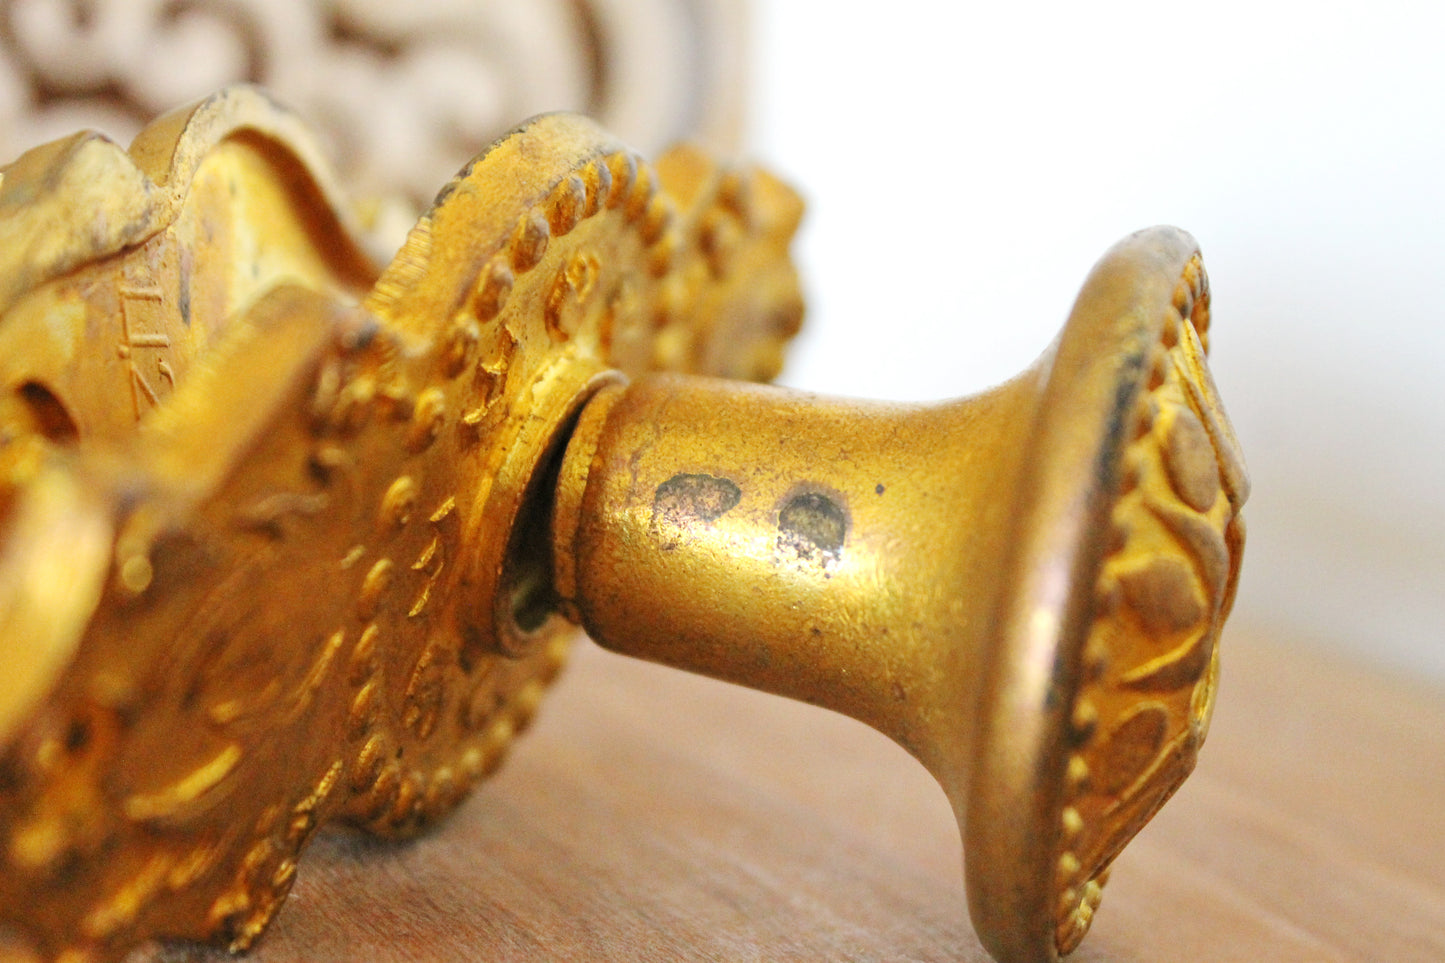 Set of two Vintage metall Door knobs - Metall yellow Handles - Soviet Door Knob 1970s - USSR vintage door knobs